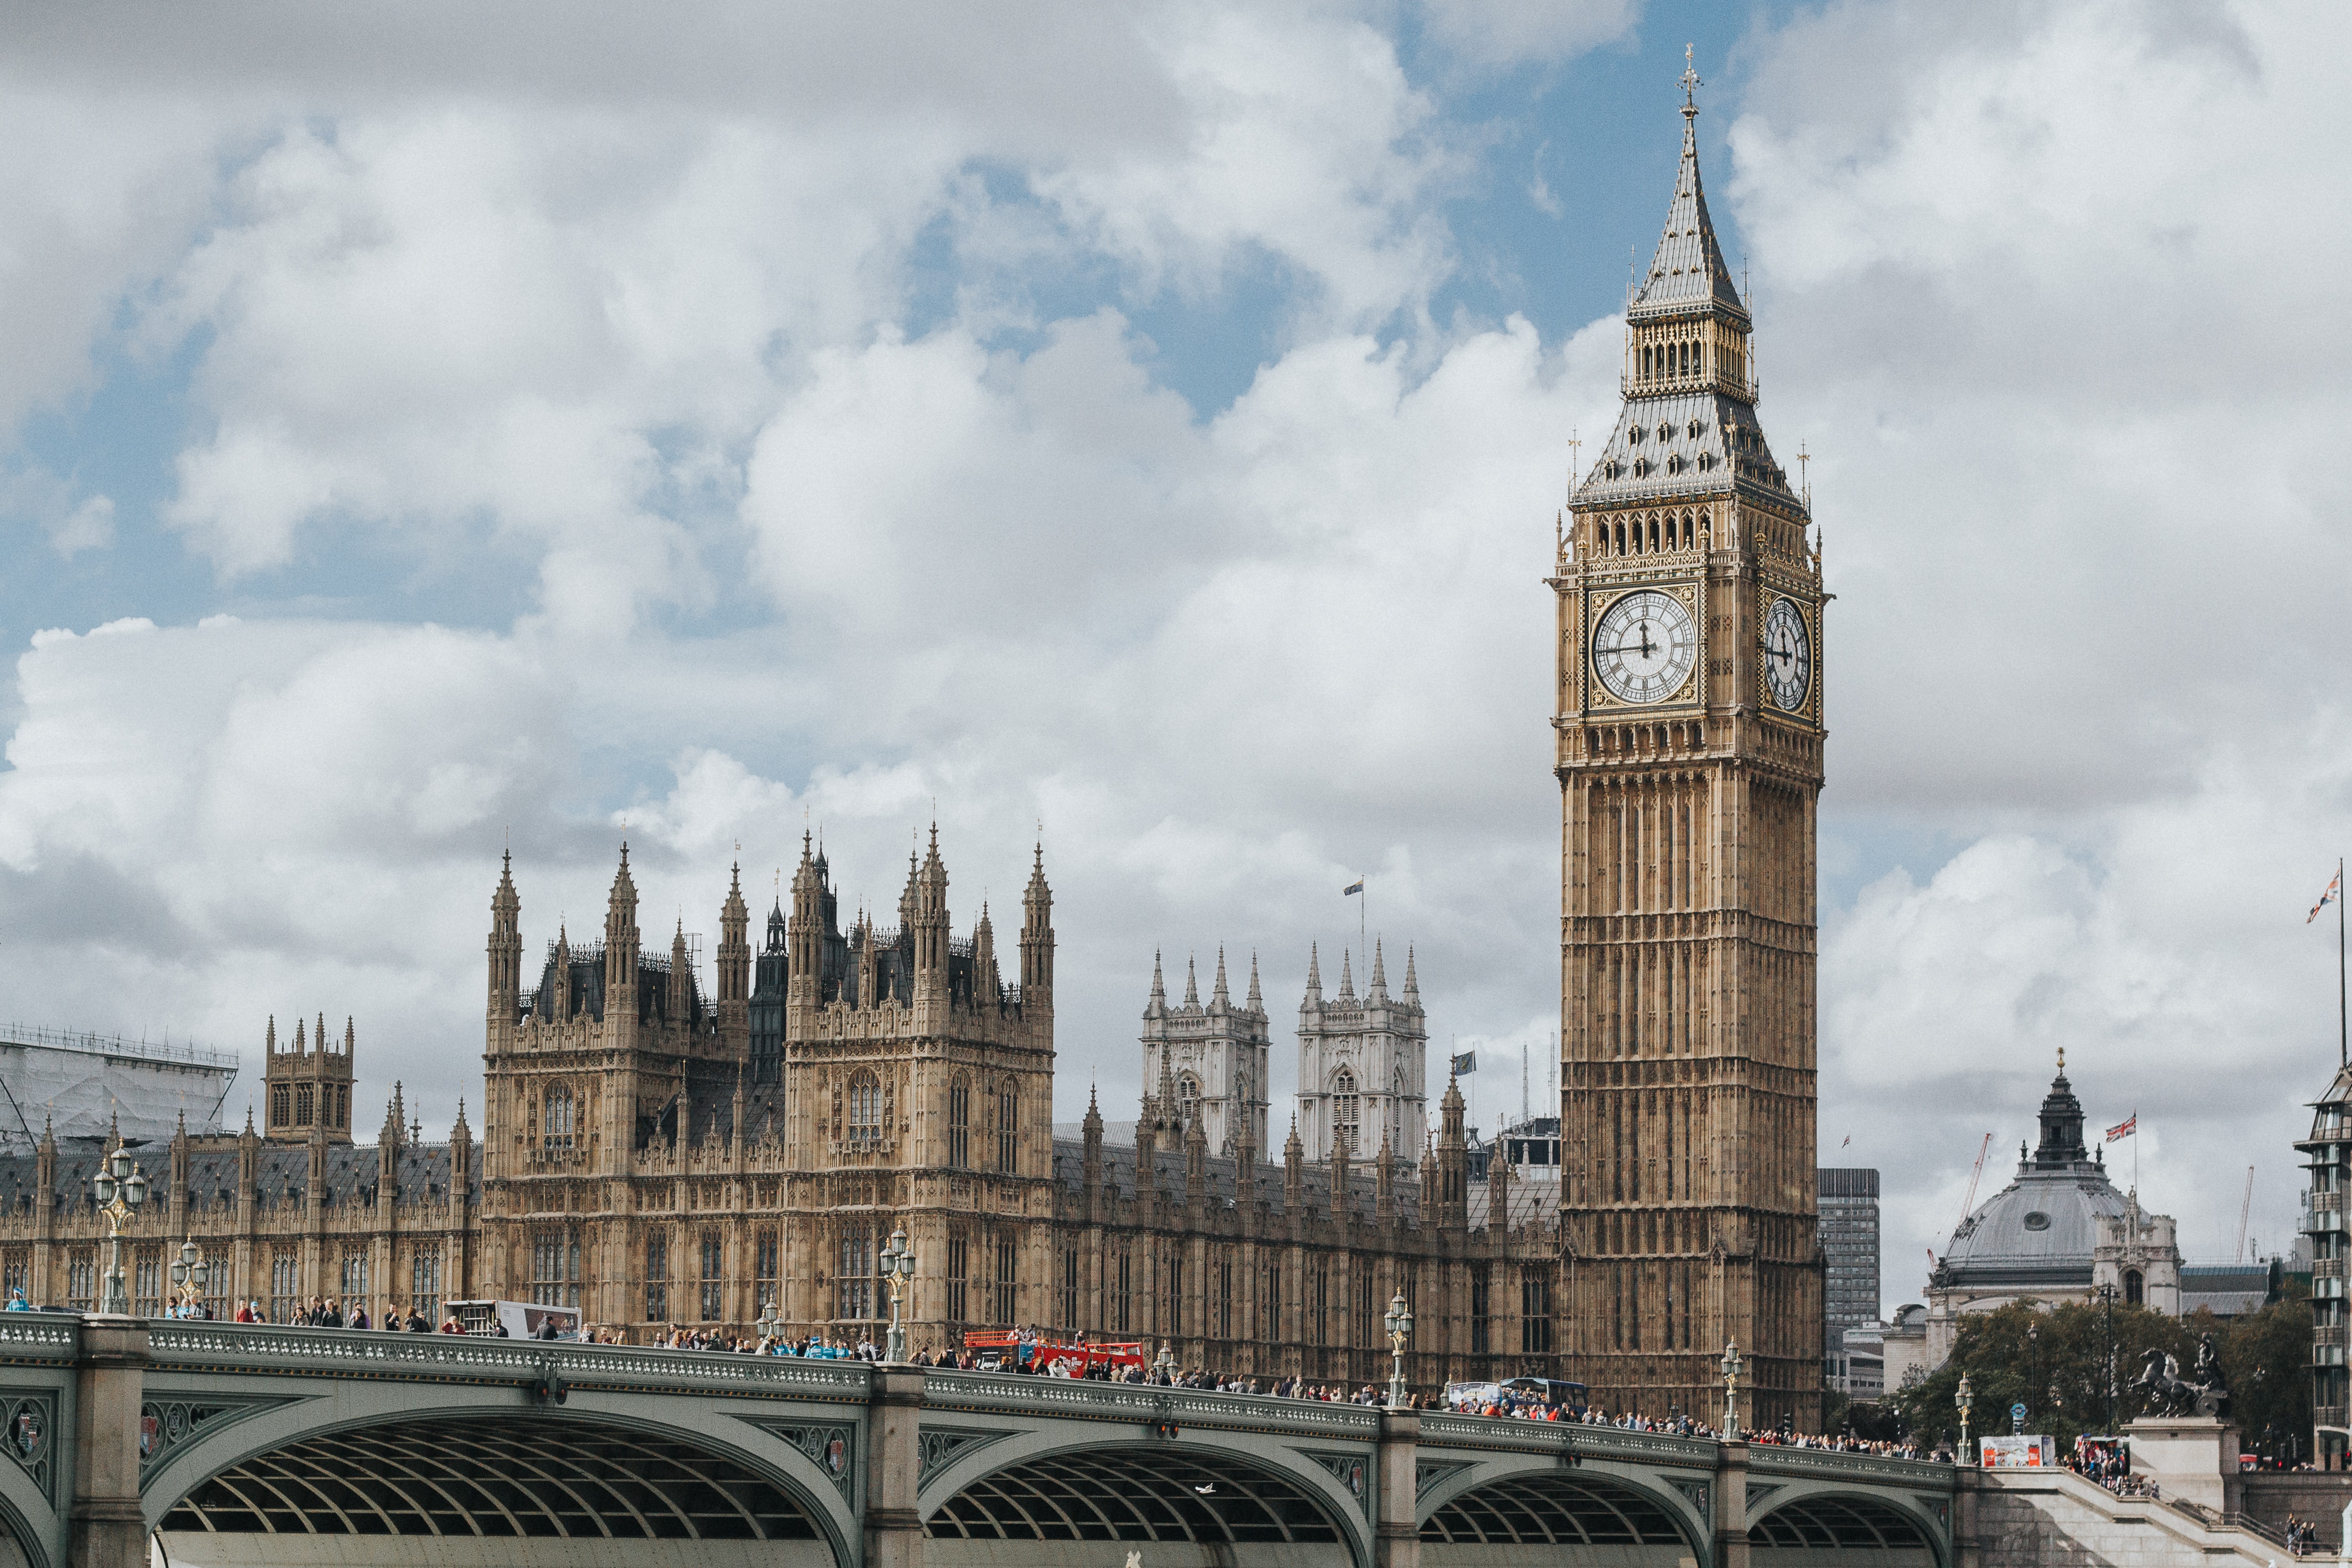 Parliament and Big Ben.